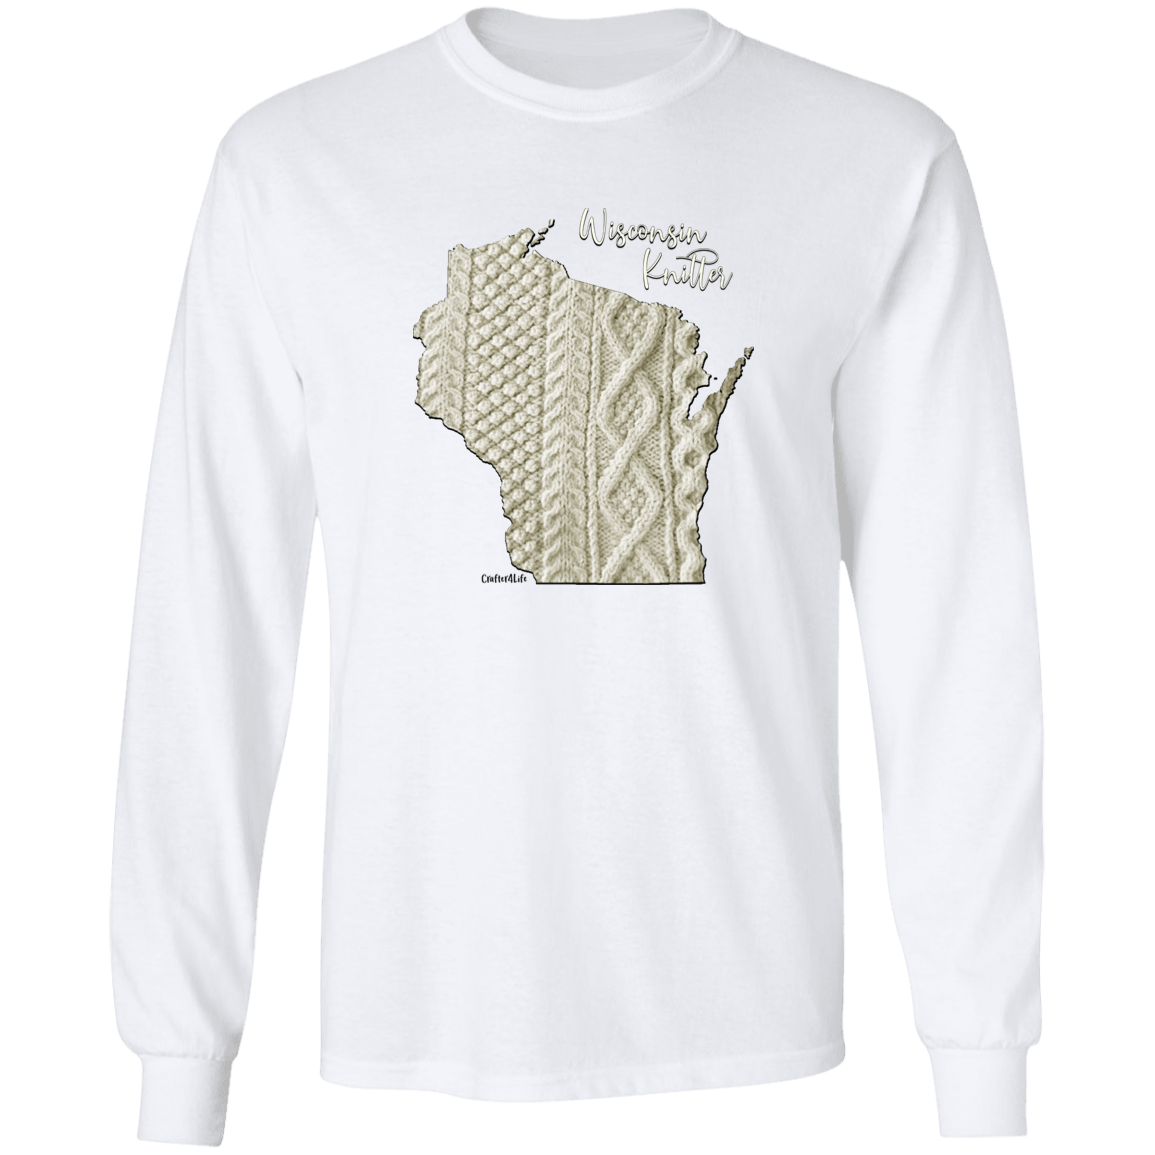 Wisconsin Knitter LS Ultra Cotton T-Shirt